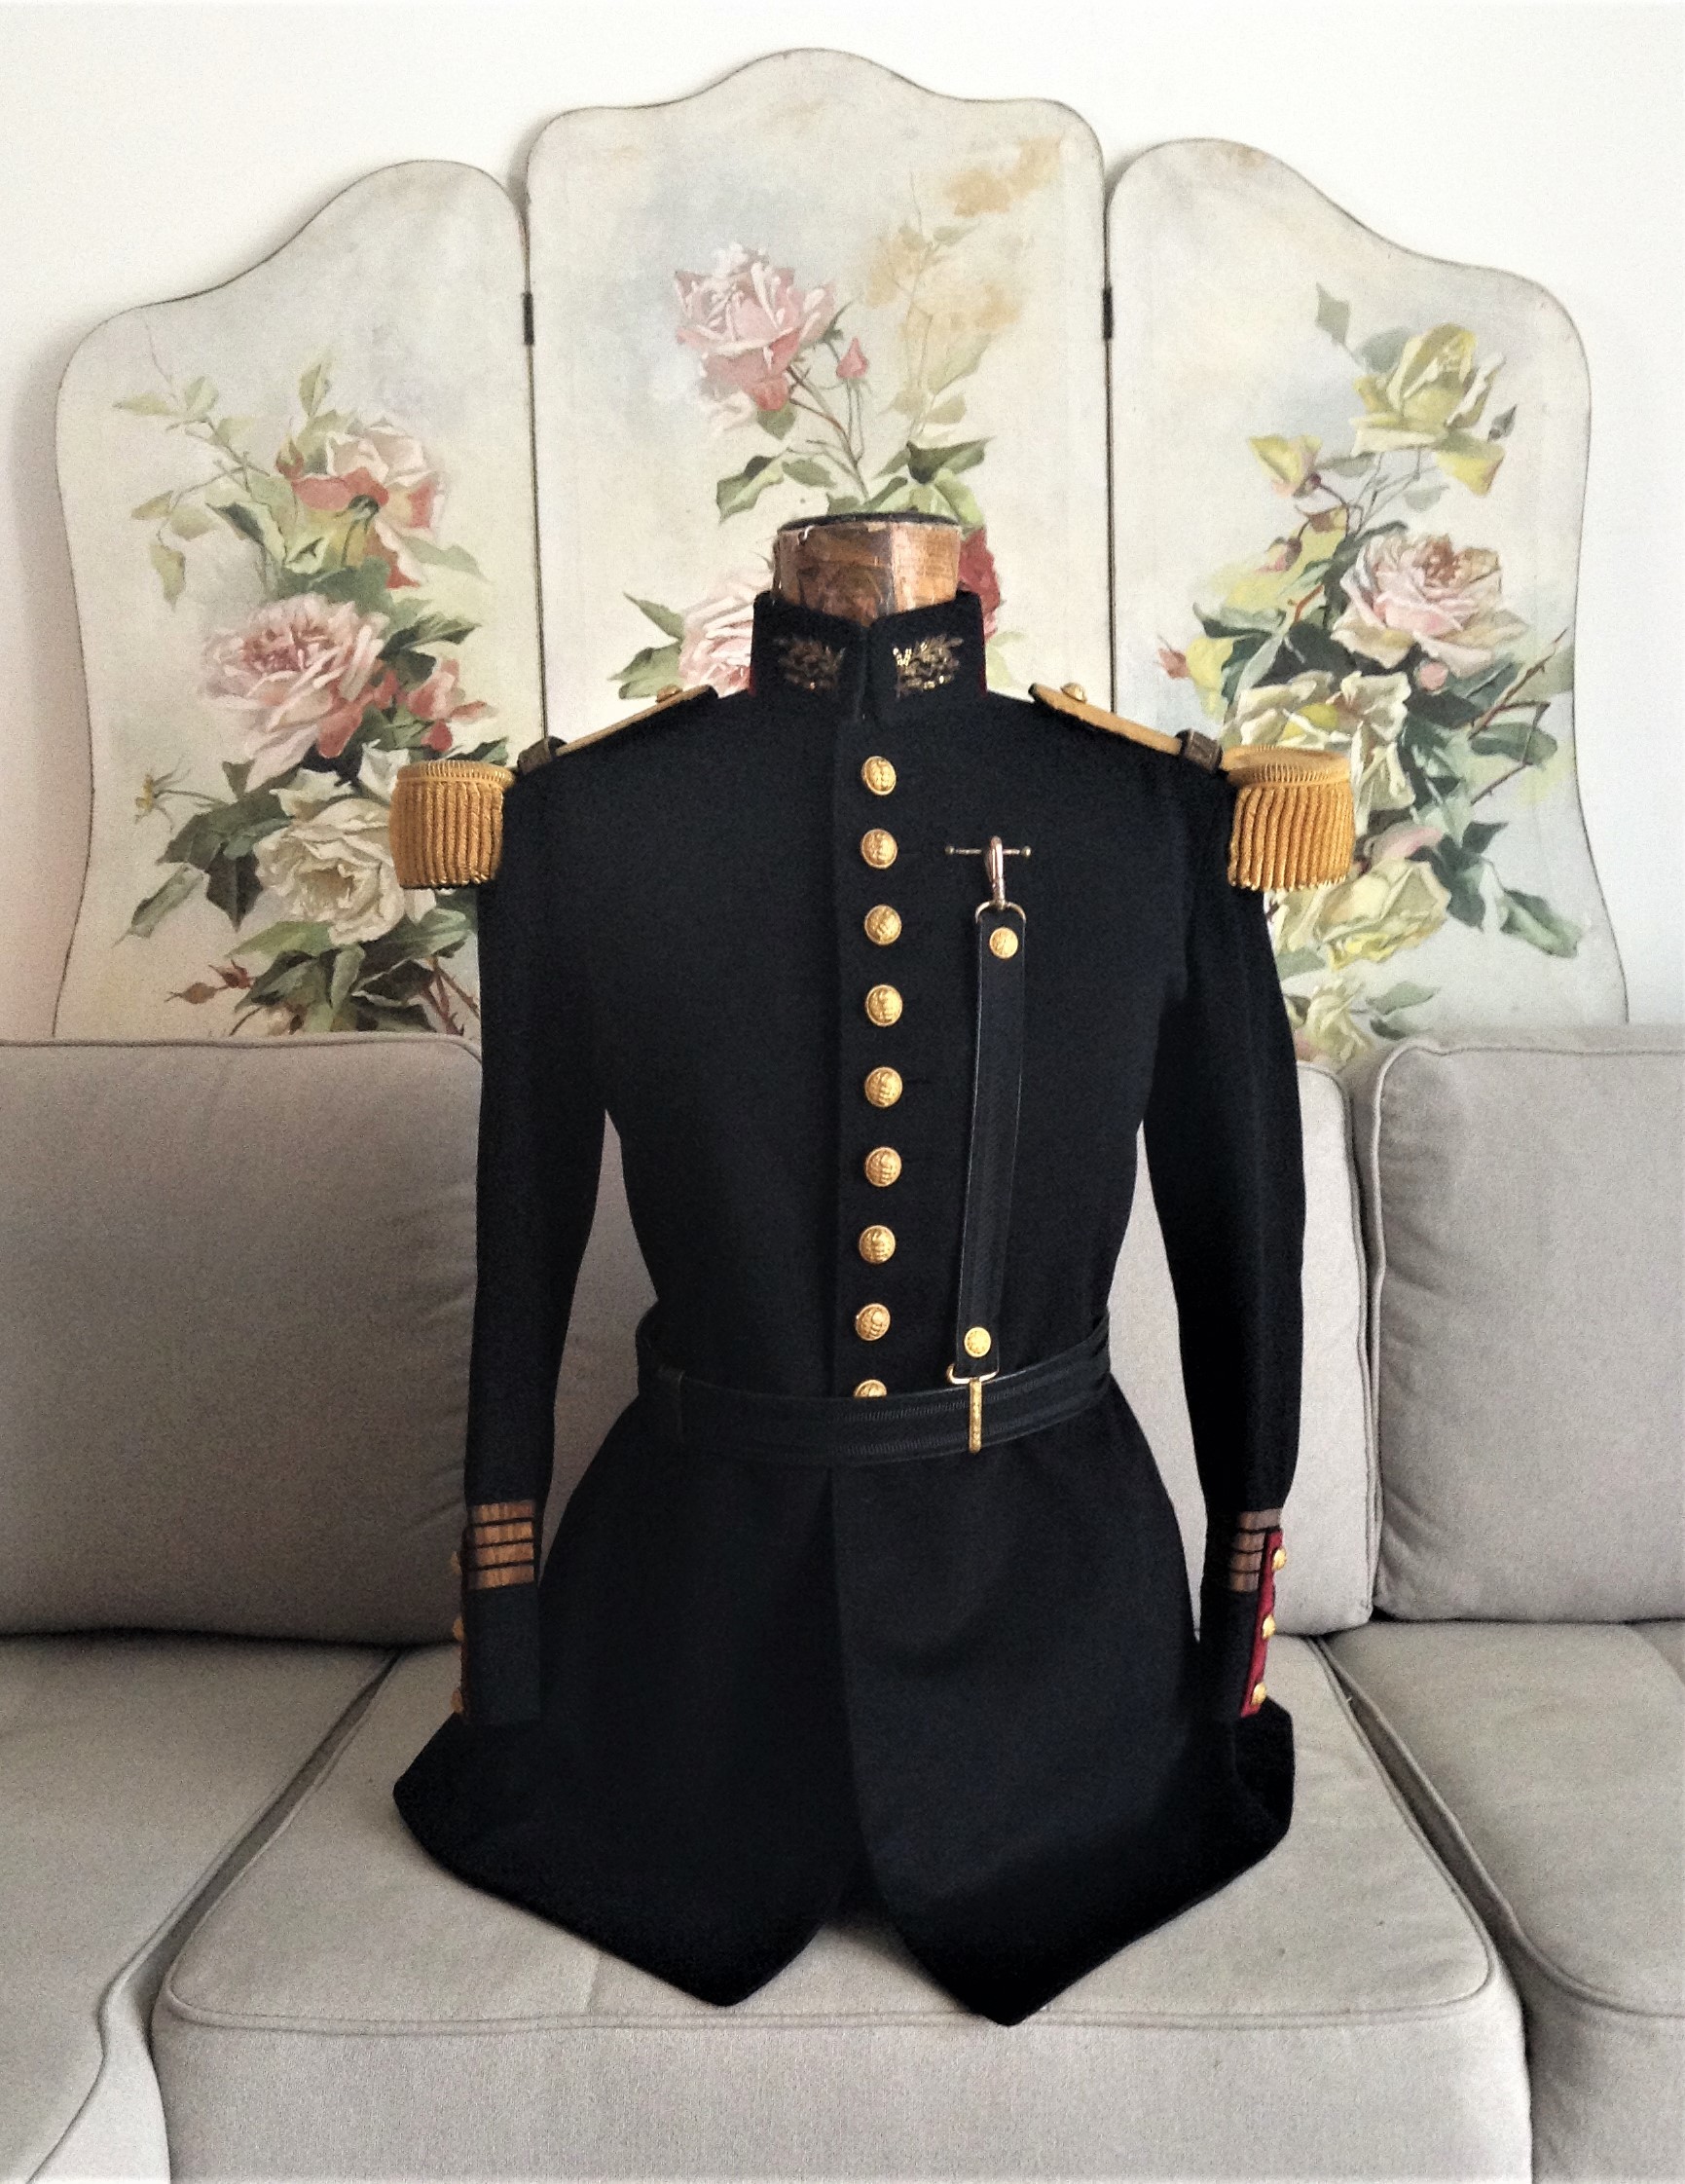 フランス軍アンティーク 軍医 大尉の礼装用制服コレクション ｅｌｅｇａｎｓｏｌｄａｔ オシャレなヨーロッパのミリタリーグッズ専門ブログ